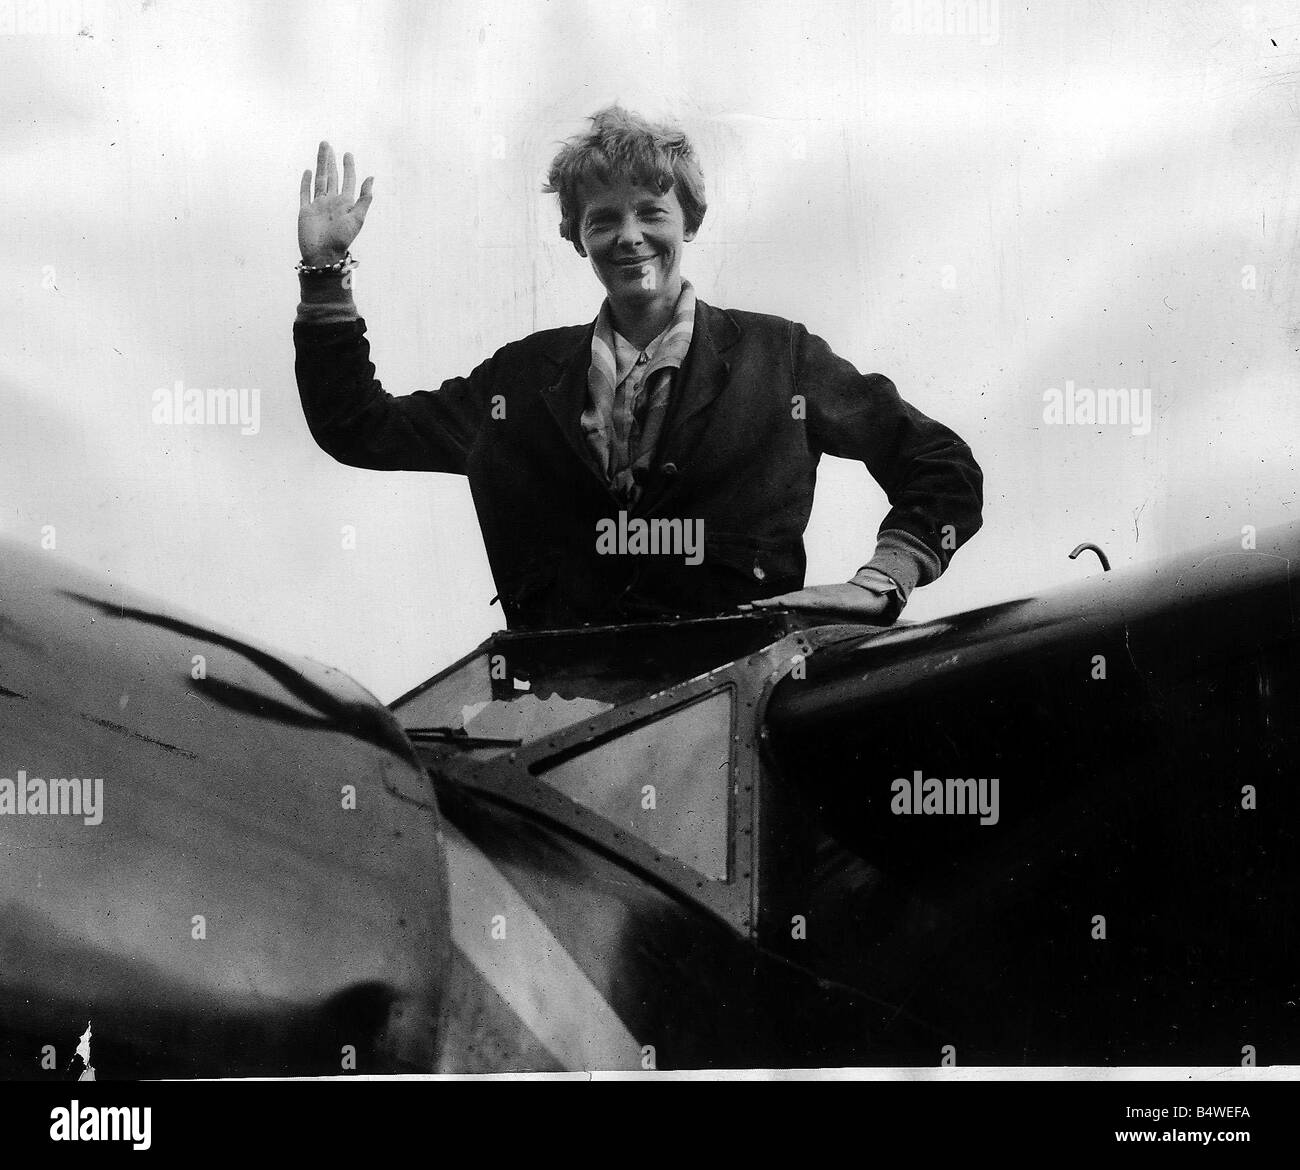 Amelia Earhart a terminé son vol Atlantique Notre photo montre Amelia Earhart aviatrice forme à des foules après l'atterrissage à Londonderry après avoir volé l'Atlantique Banque D'Images